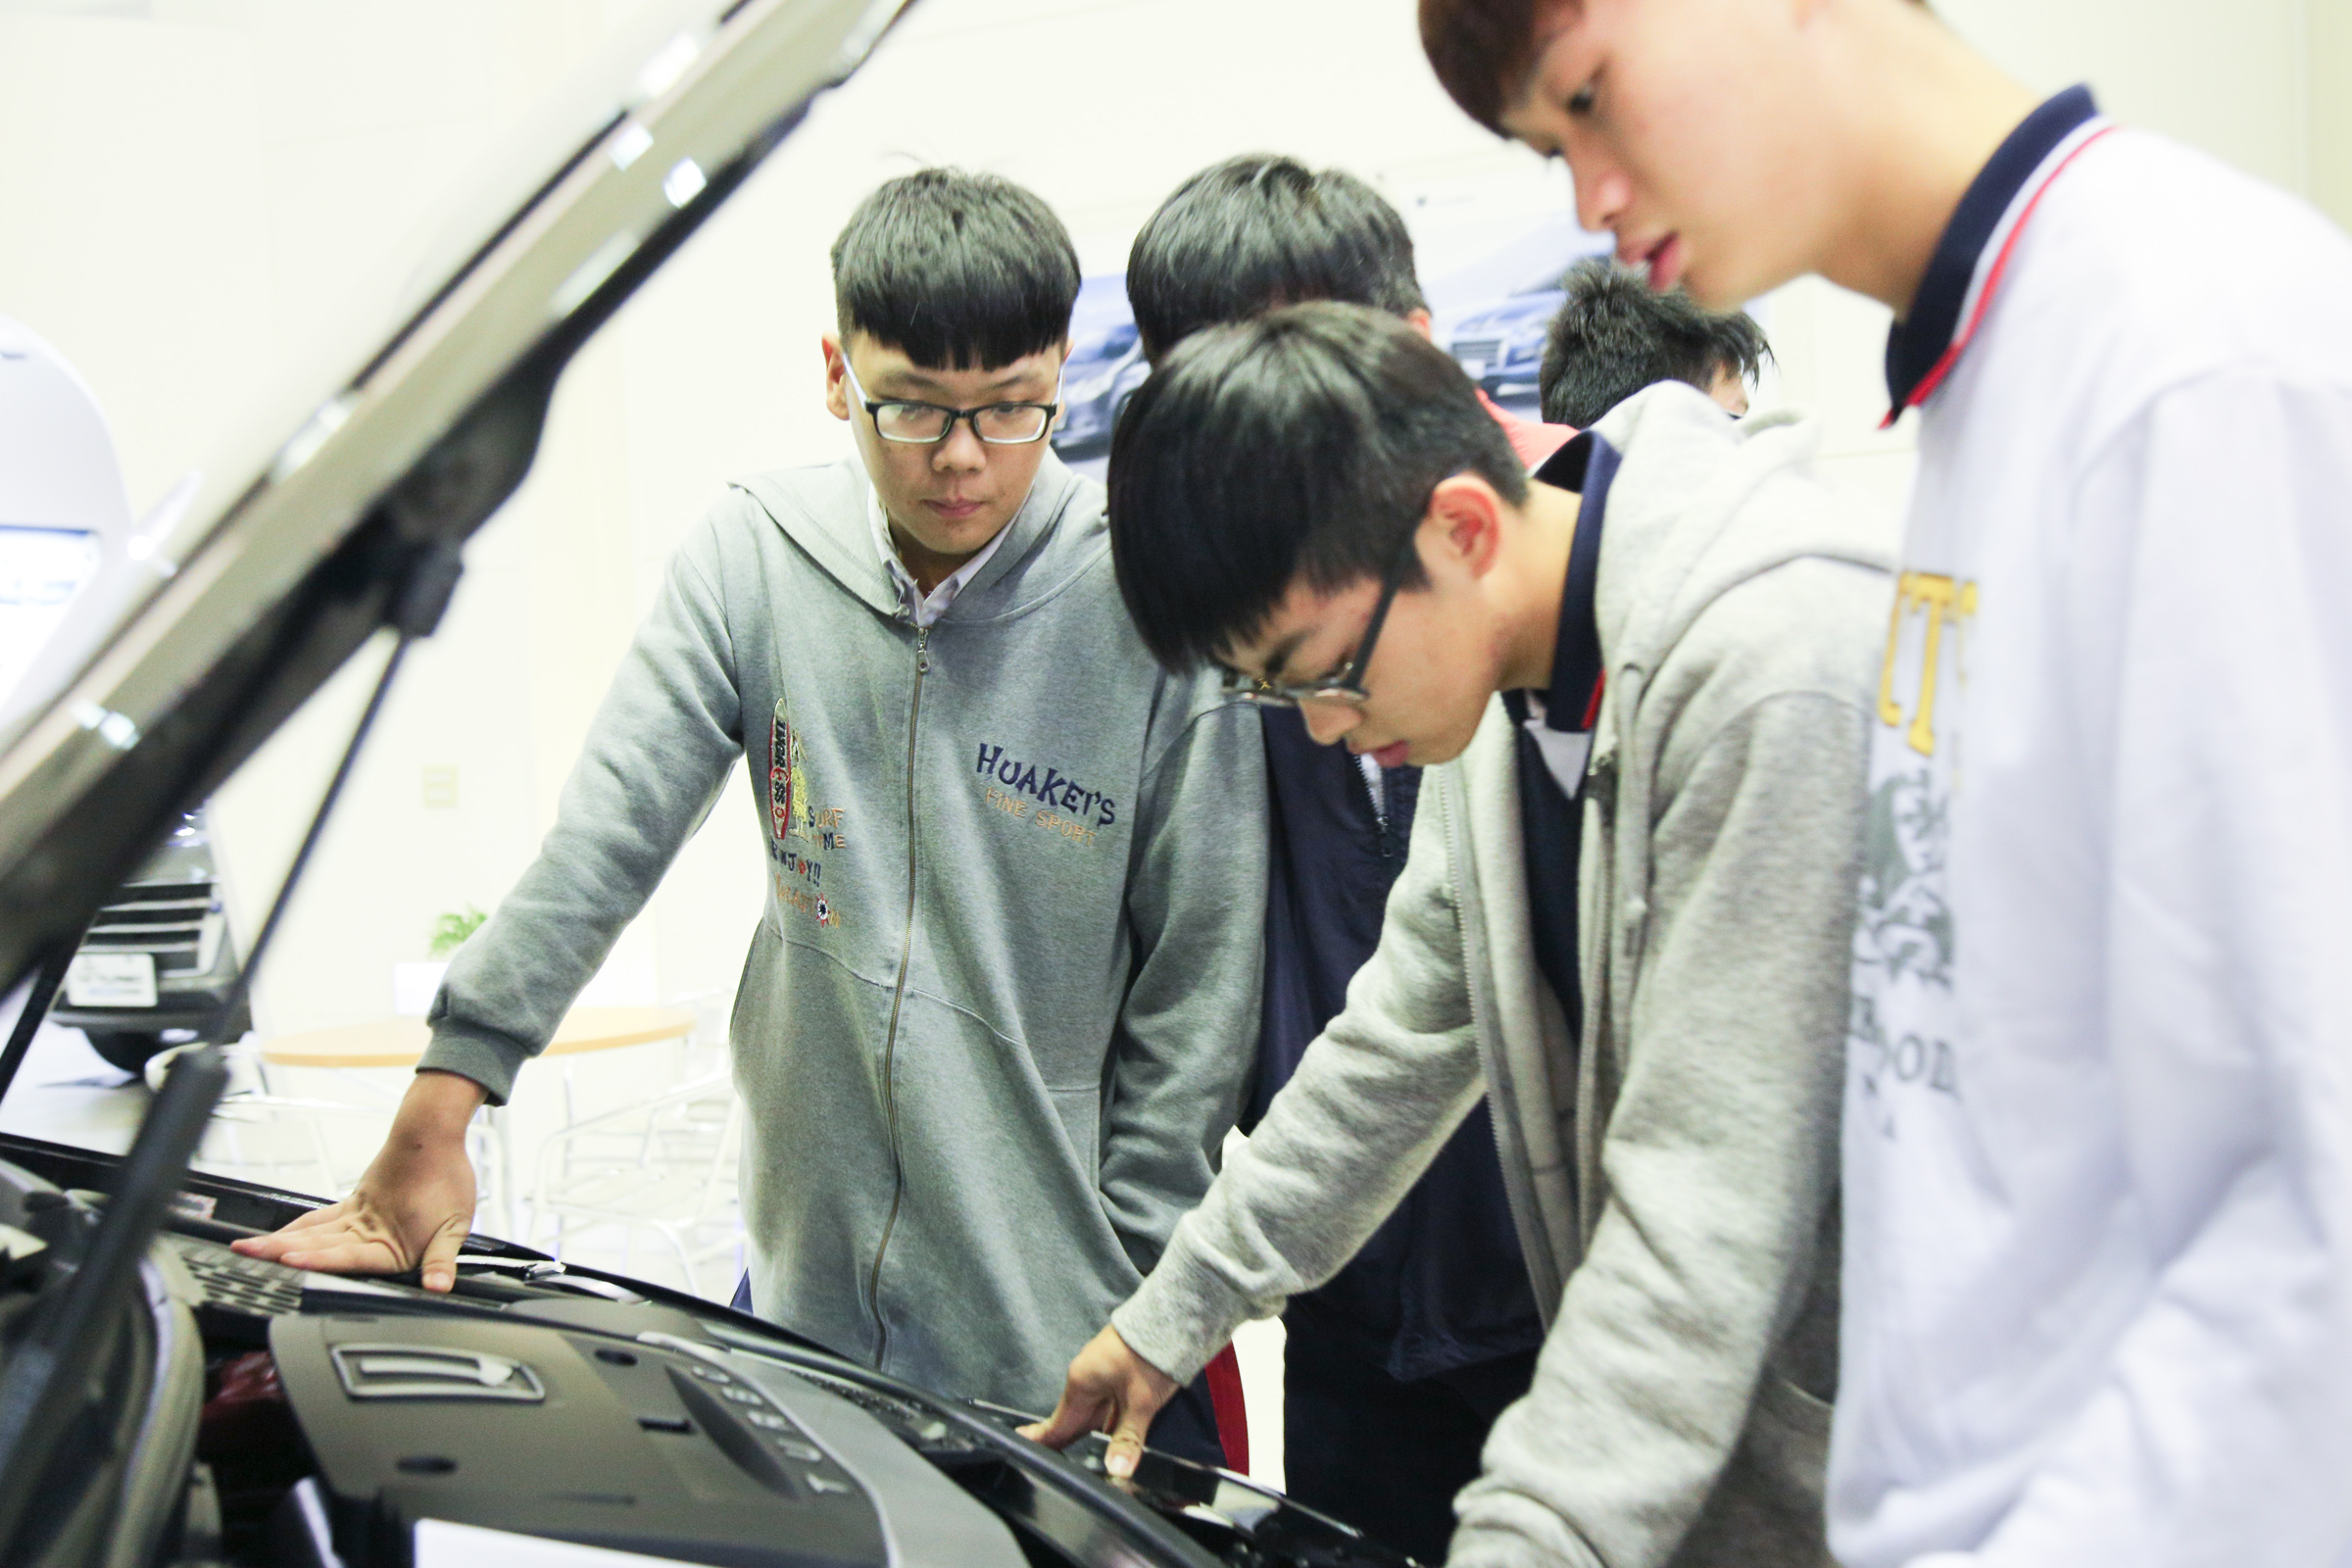 Luxgen 由北智捷總經理連振偉代表出席及捐贈 U6 GT、M7 Turbo Eco Hyper 共兩輛車予「109學年度全國工業類科學生技藝競賽」，供競賽得名之學校教學使用。